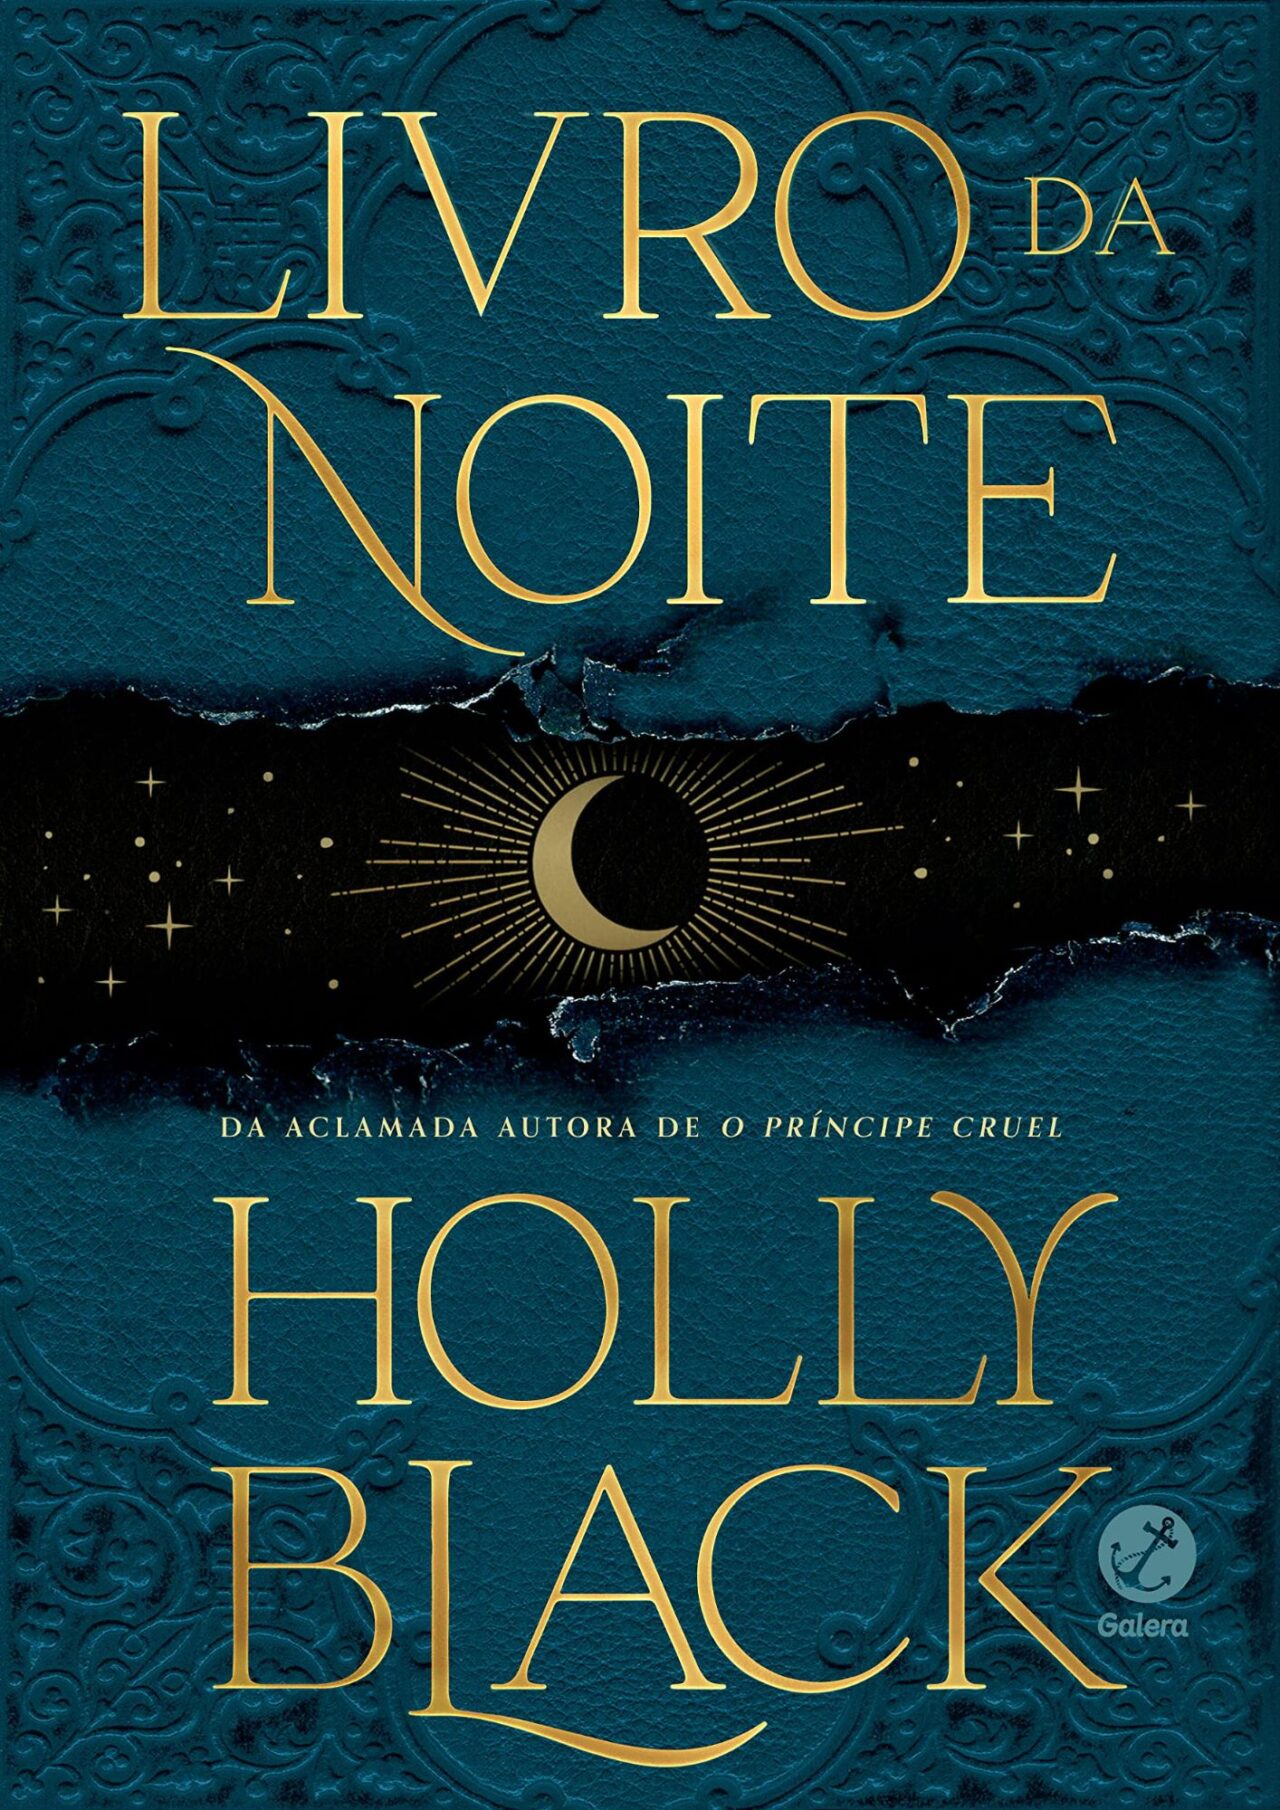 Livro da Noite, "A estreia de Holly Black na fantasia adulta."